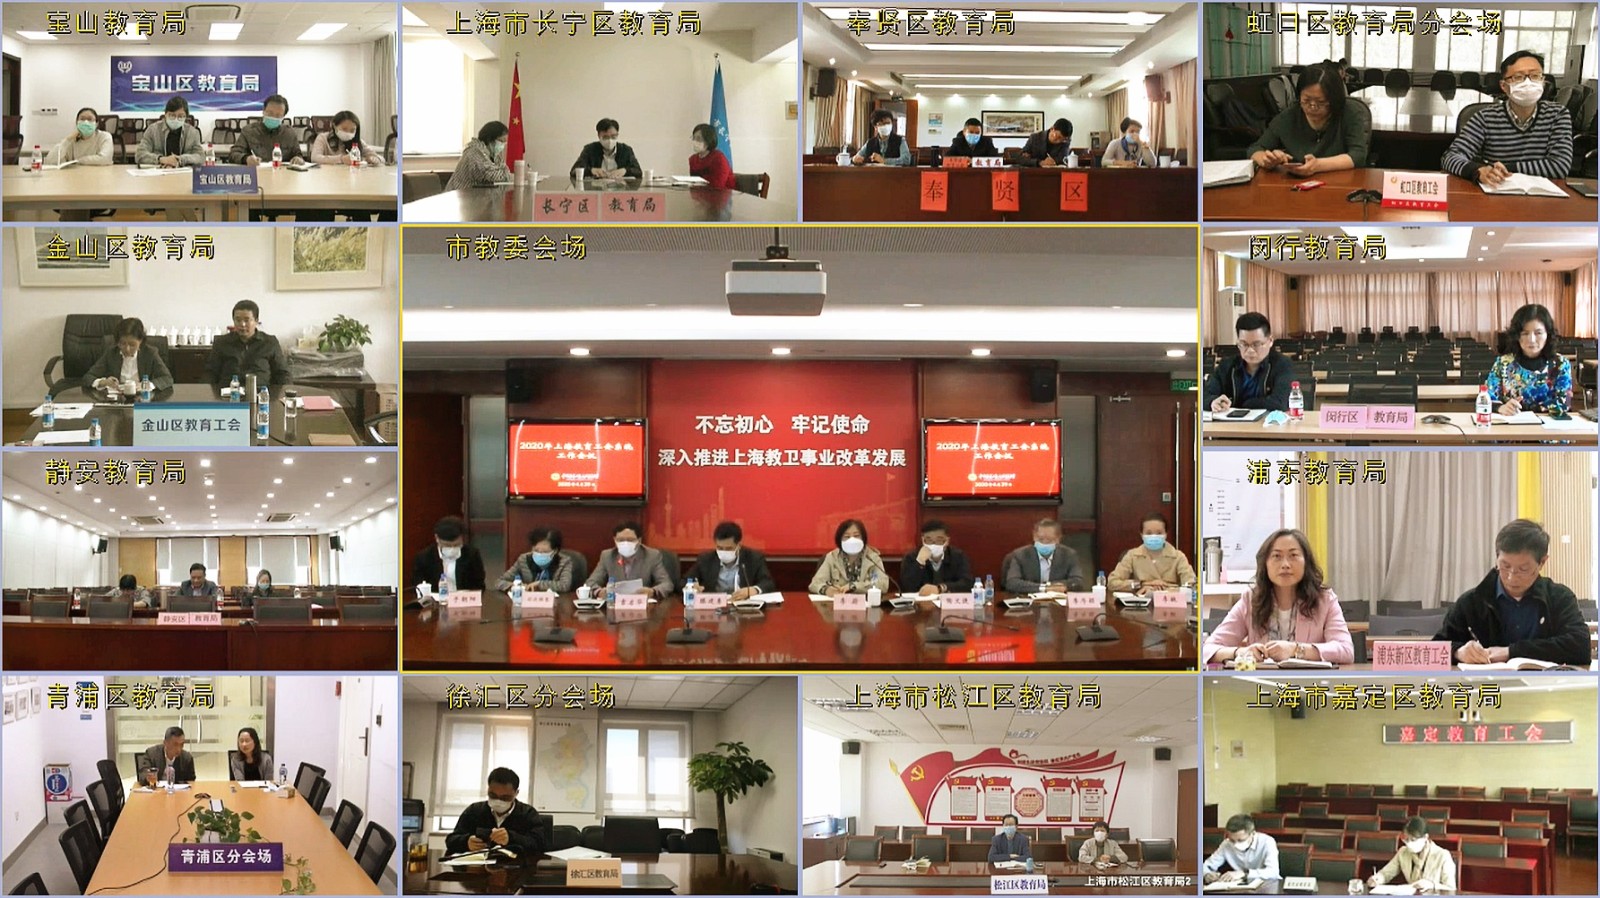 2020年上海市教育工会系统工作会议-视频会议界面1.jpg